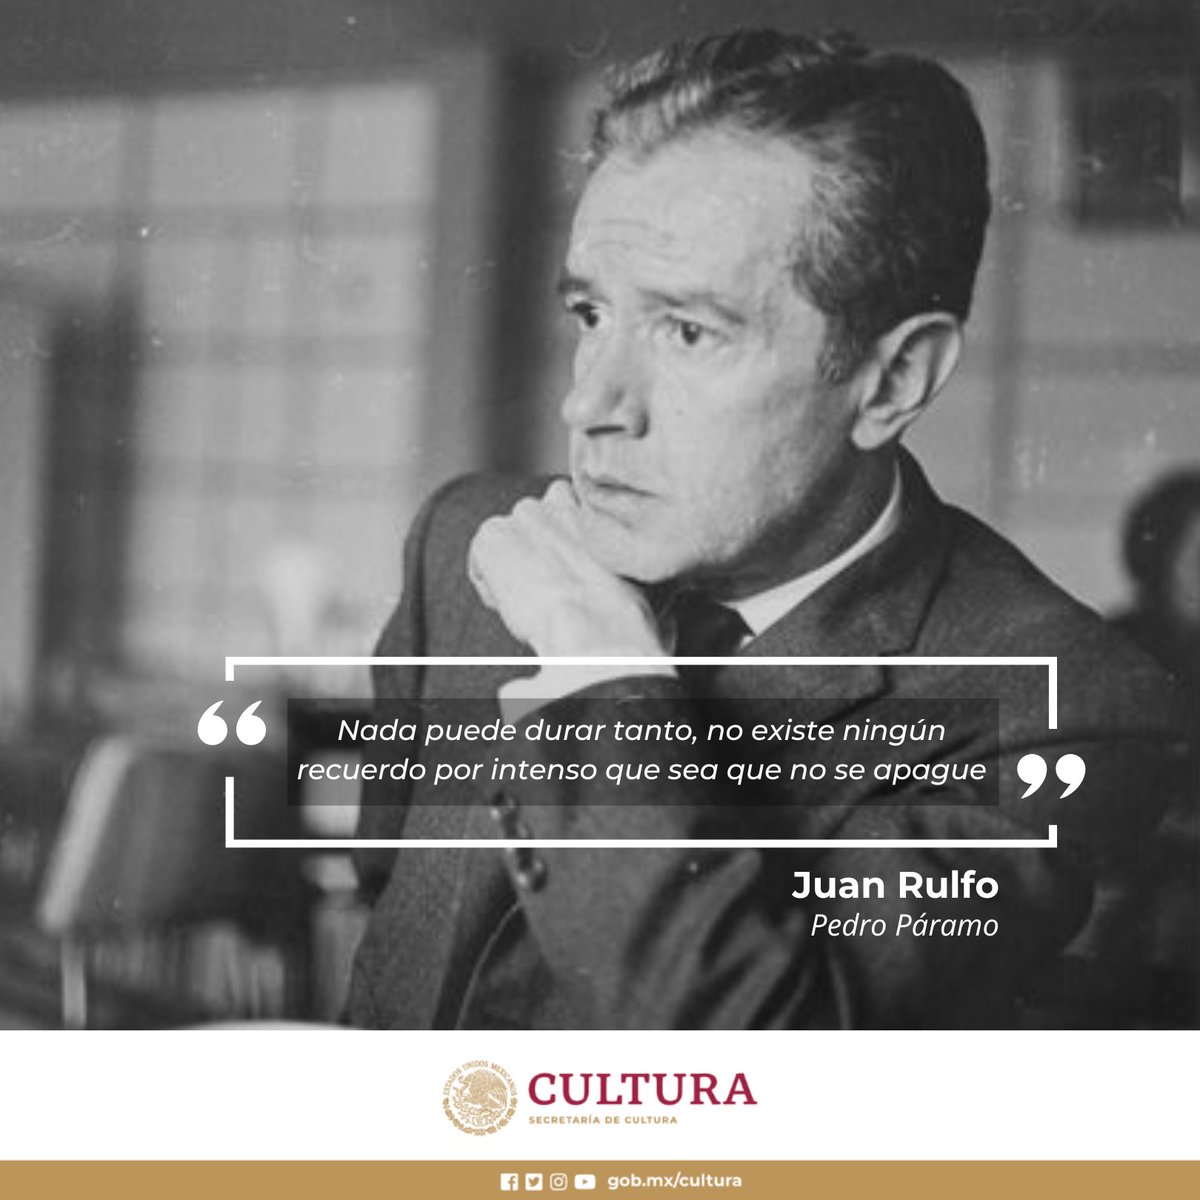 Conmemoramos el natalicio de Juan Rulfo, novelista, cuentista, fotógrafo y editor cuyas obras continúan cautivando a los lectores de México y el mundo. ¿Cuál de sus obras es tu predilecta? 🤓